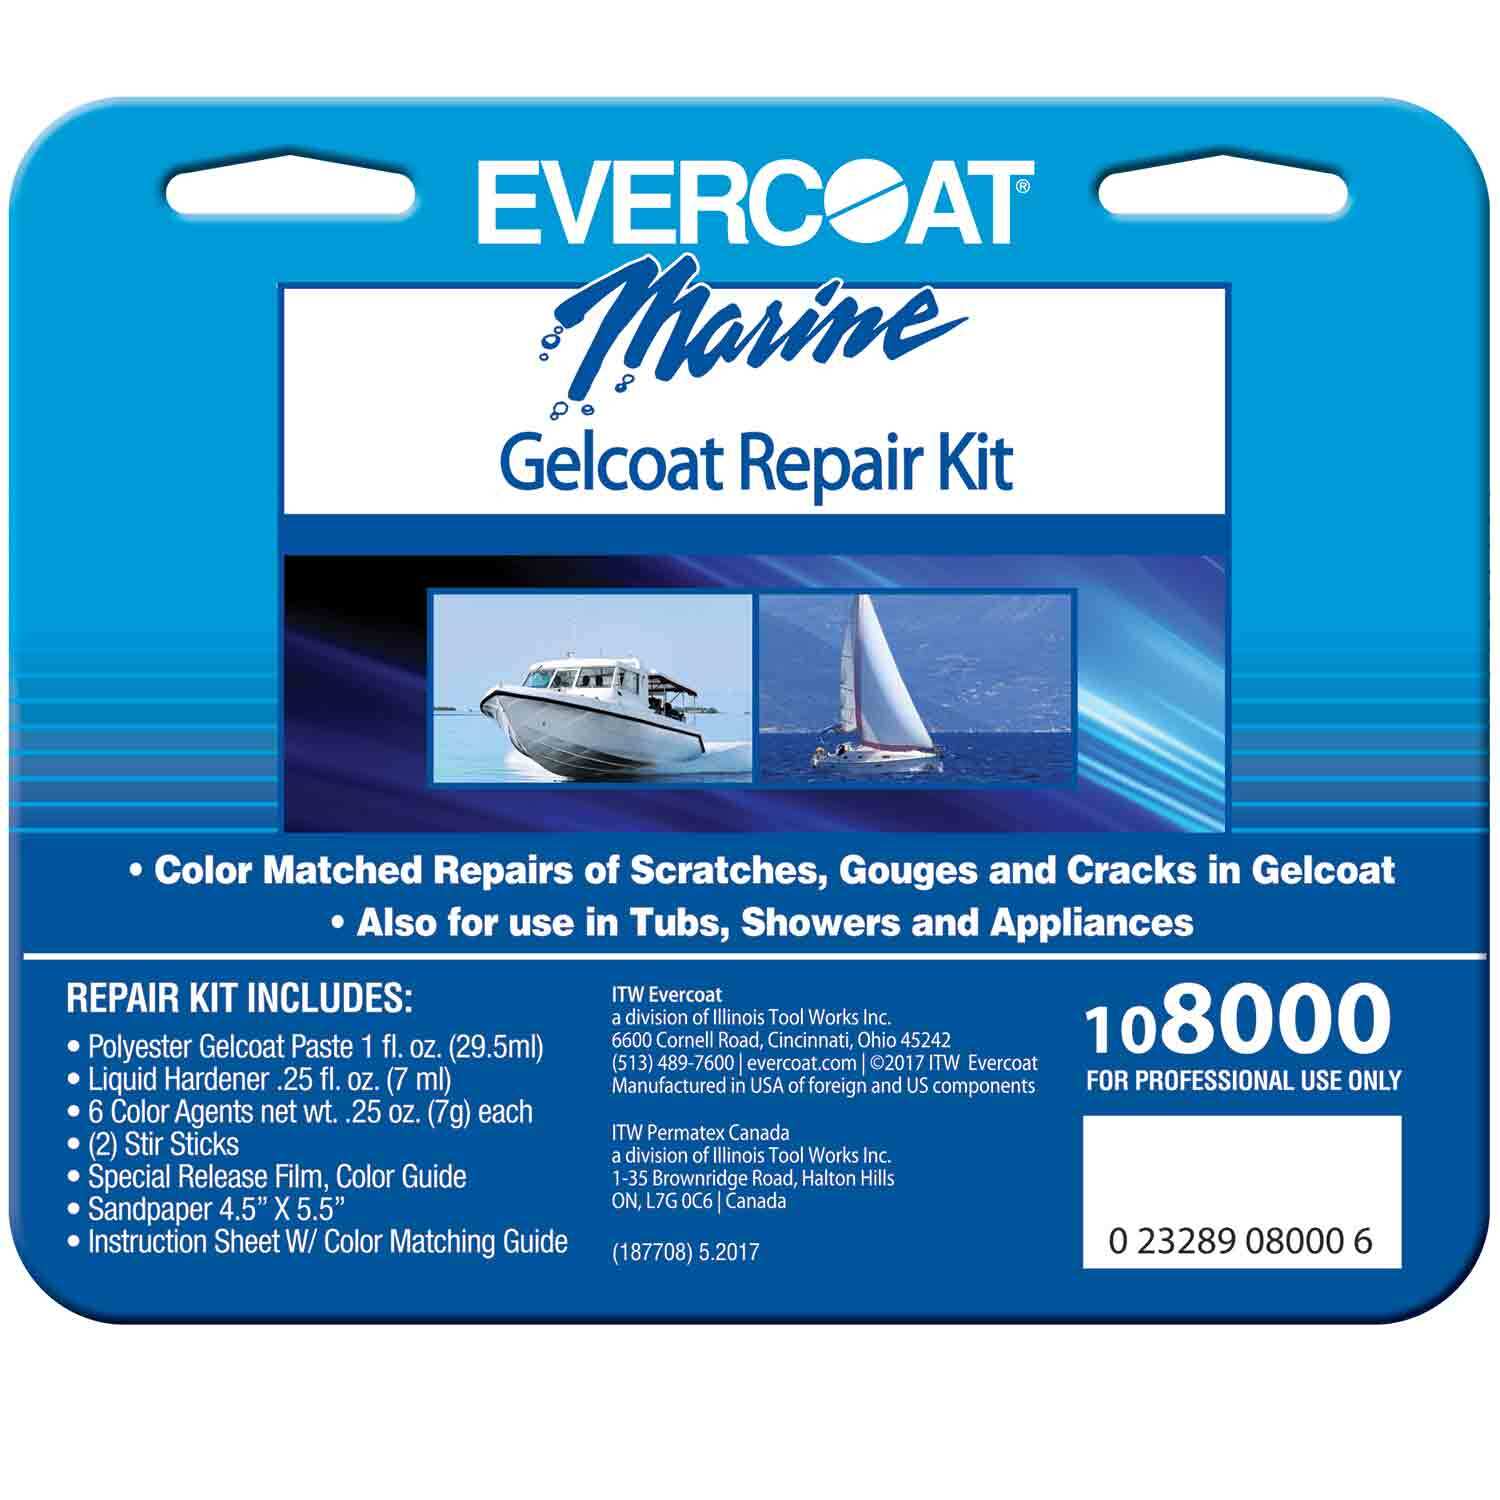 Jet Ski Gelcoat Repair Kit, How to Articles